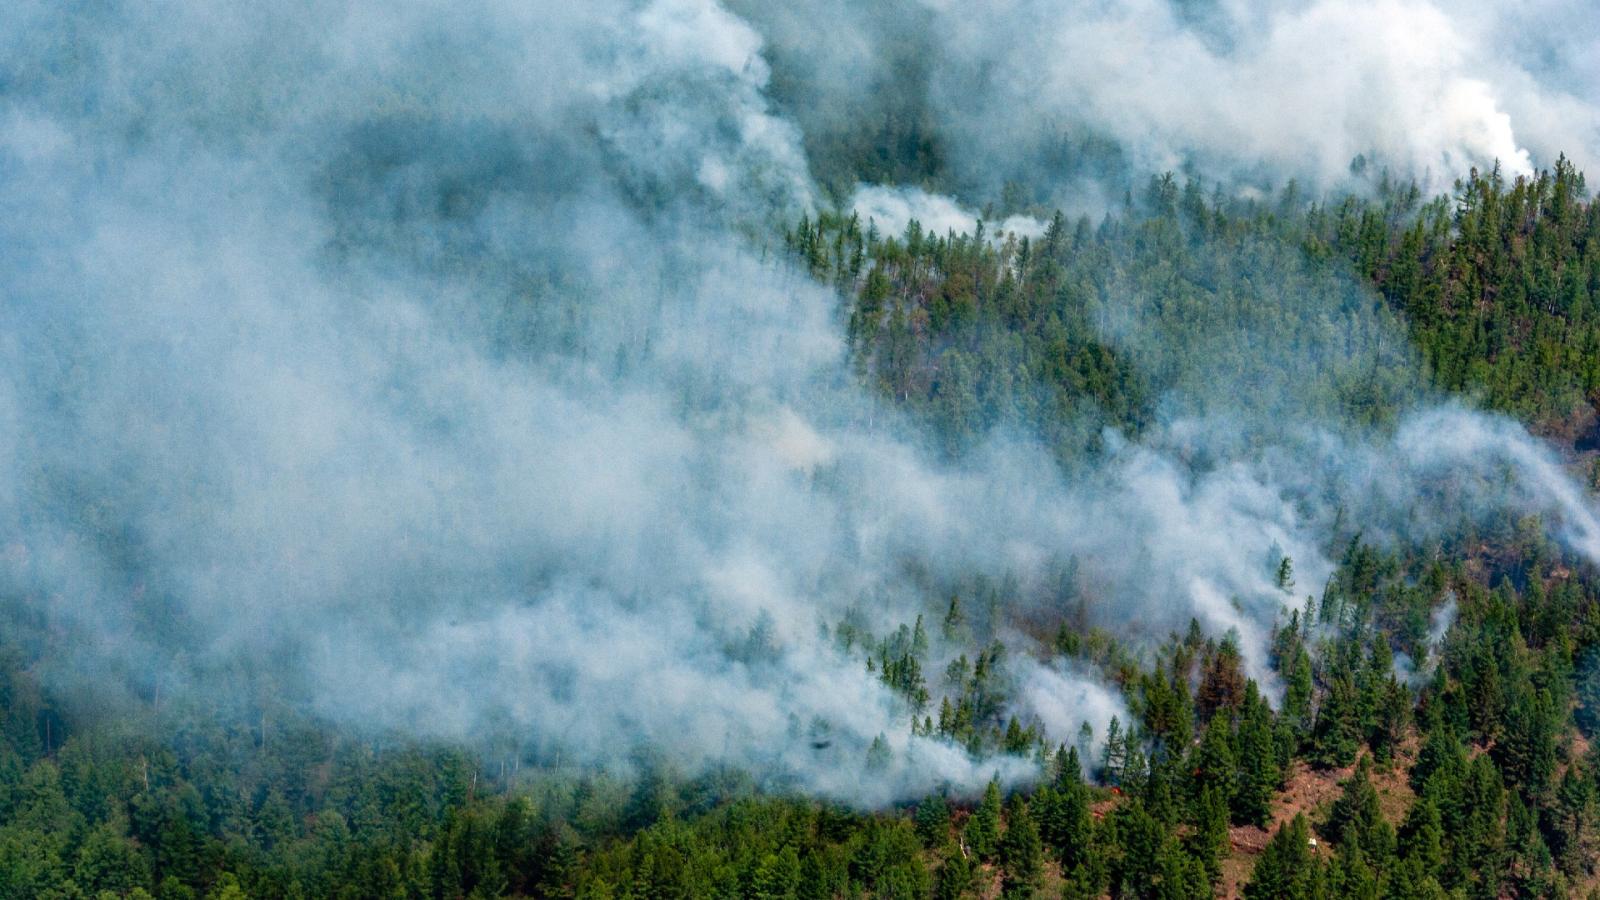 Стекло, окурки и последствия шашлыков: основная причина лесных пожаров — человек - image 1